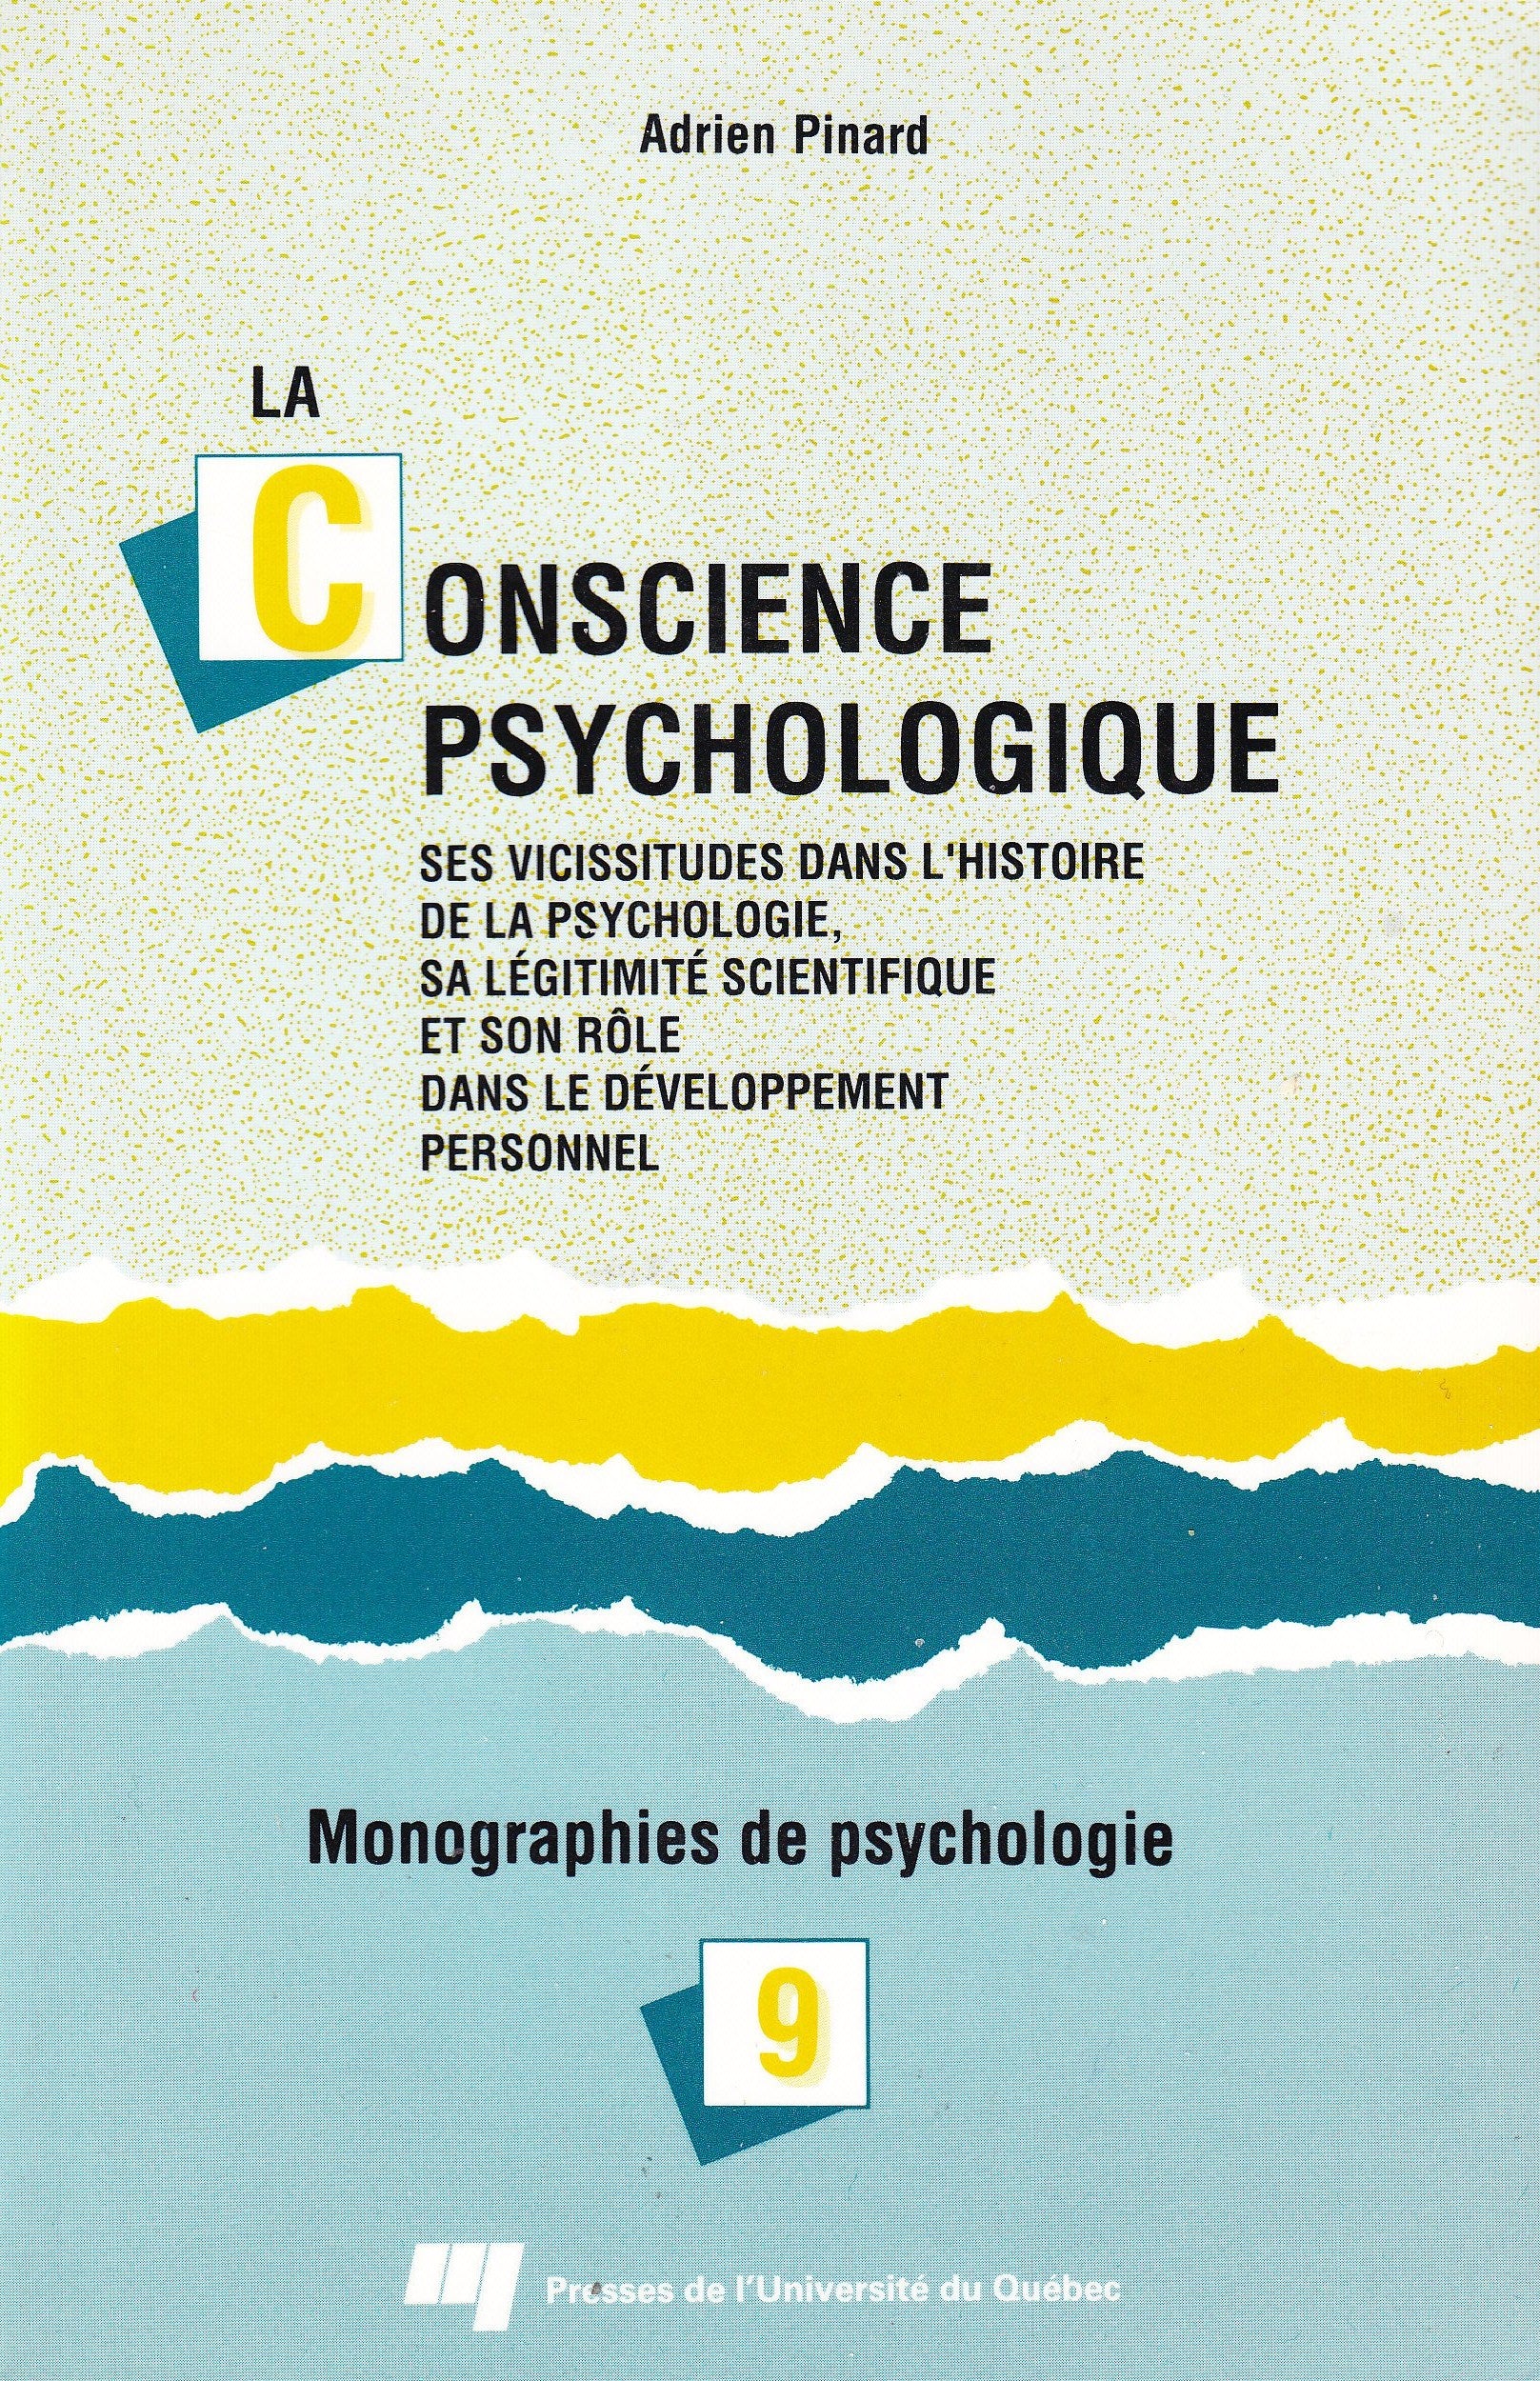 Livre ISBN 2760505391 La conscience pshychologique # 7 : Ses vicissitudes dans l'histoire de la psychologie, sa légitimité scientifique et son rôle dans le développement personnel (Adrien Pinard)